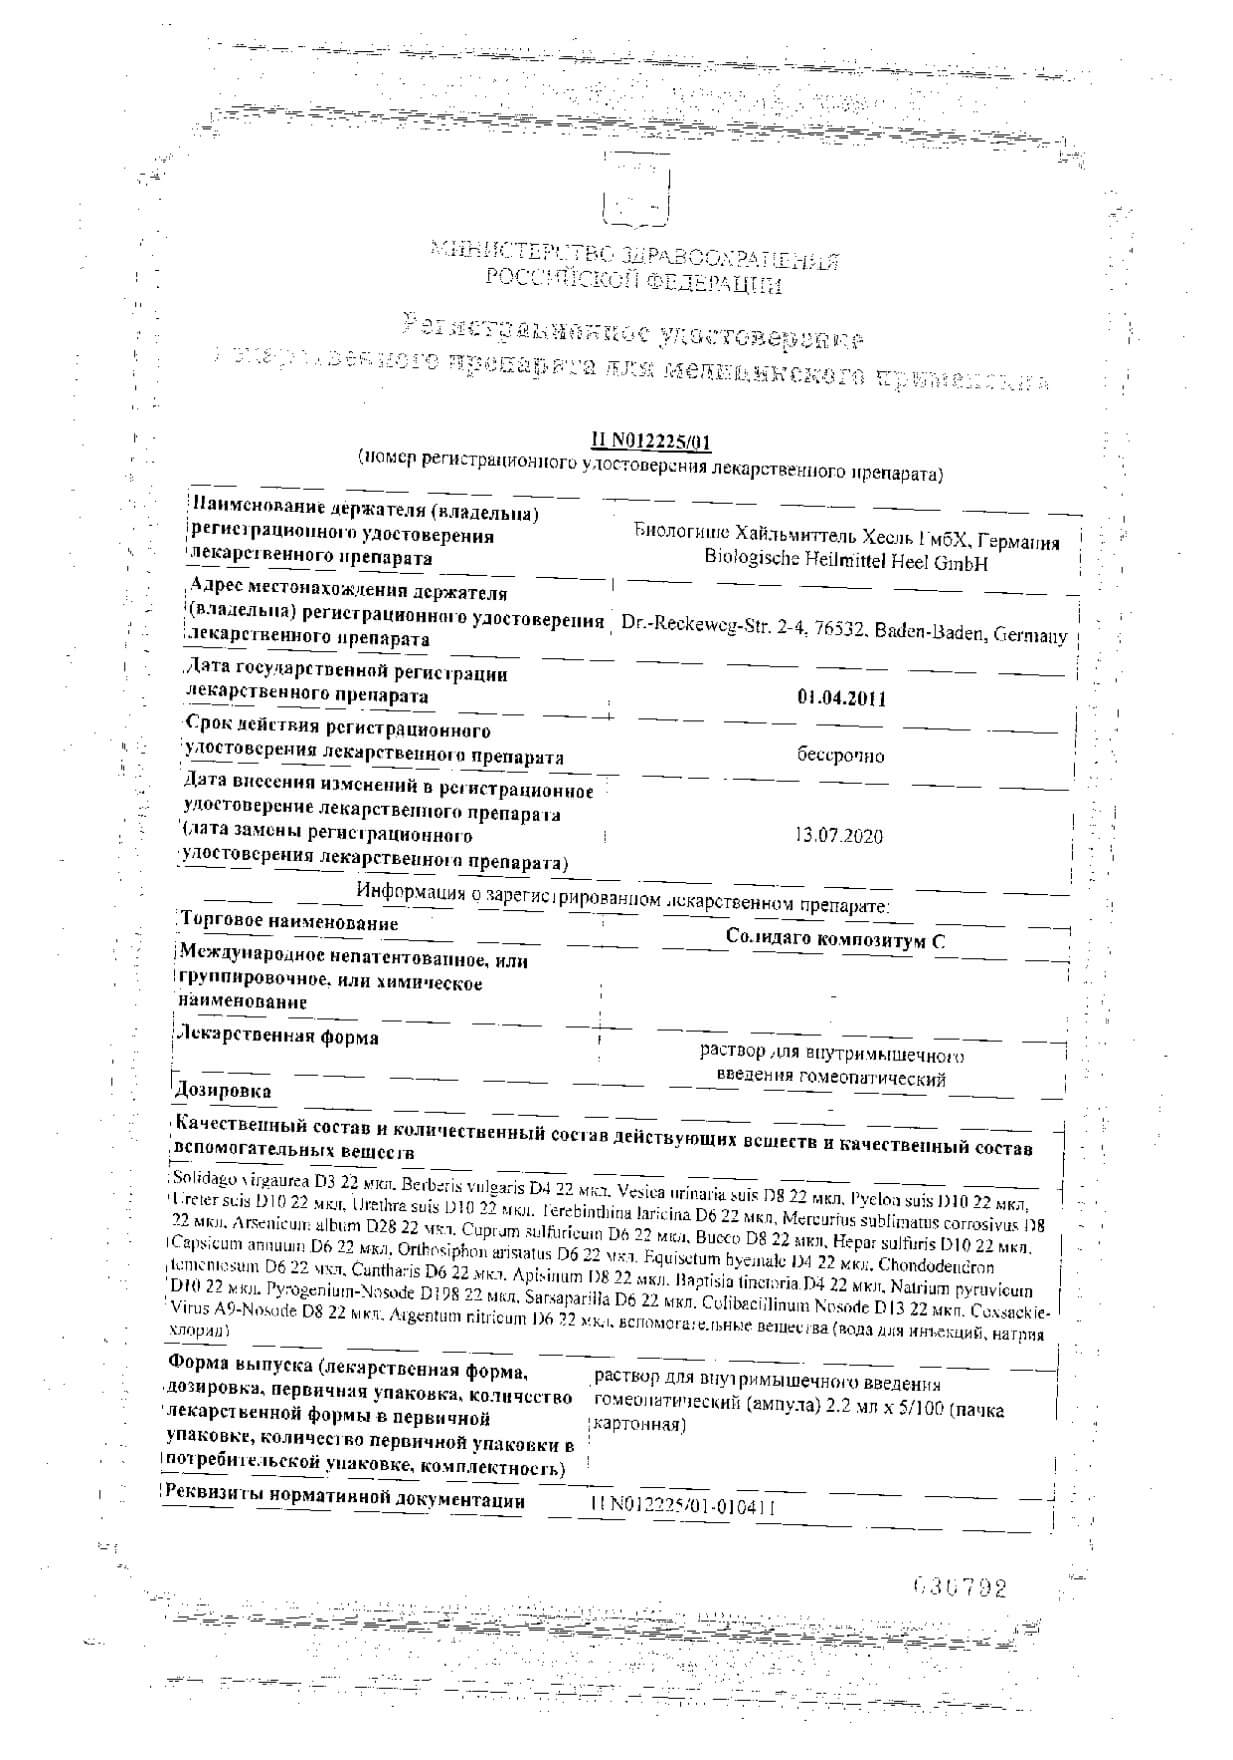 Солидаго композитум С раствор для в/м введ. гомеопатический 2,2мл 100шт: сертификат